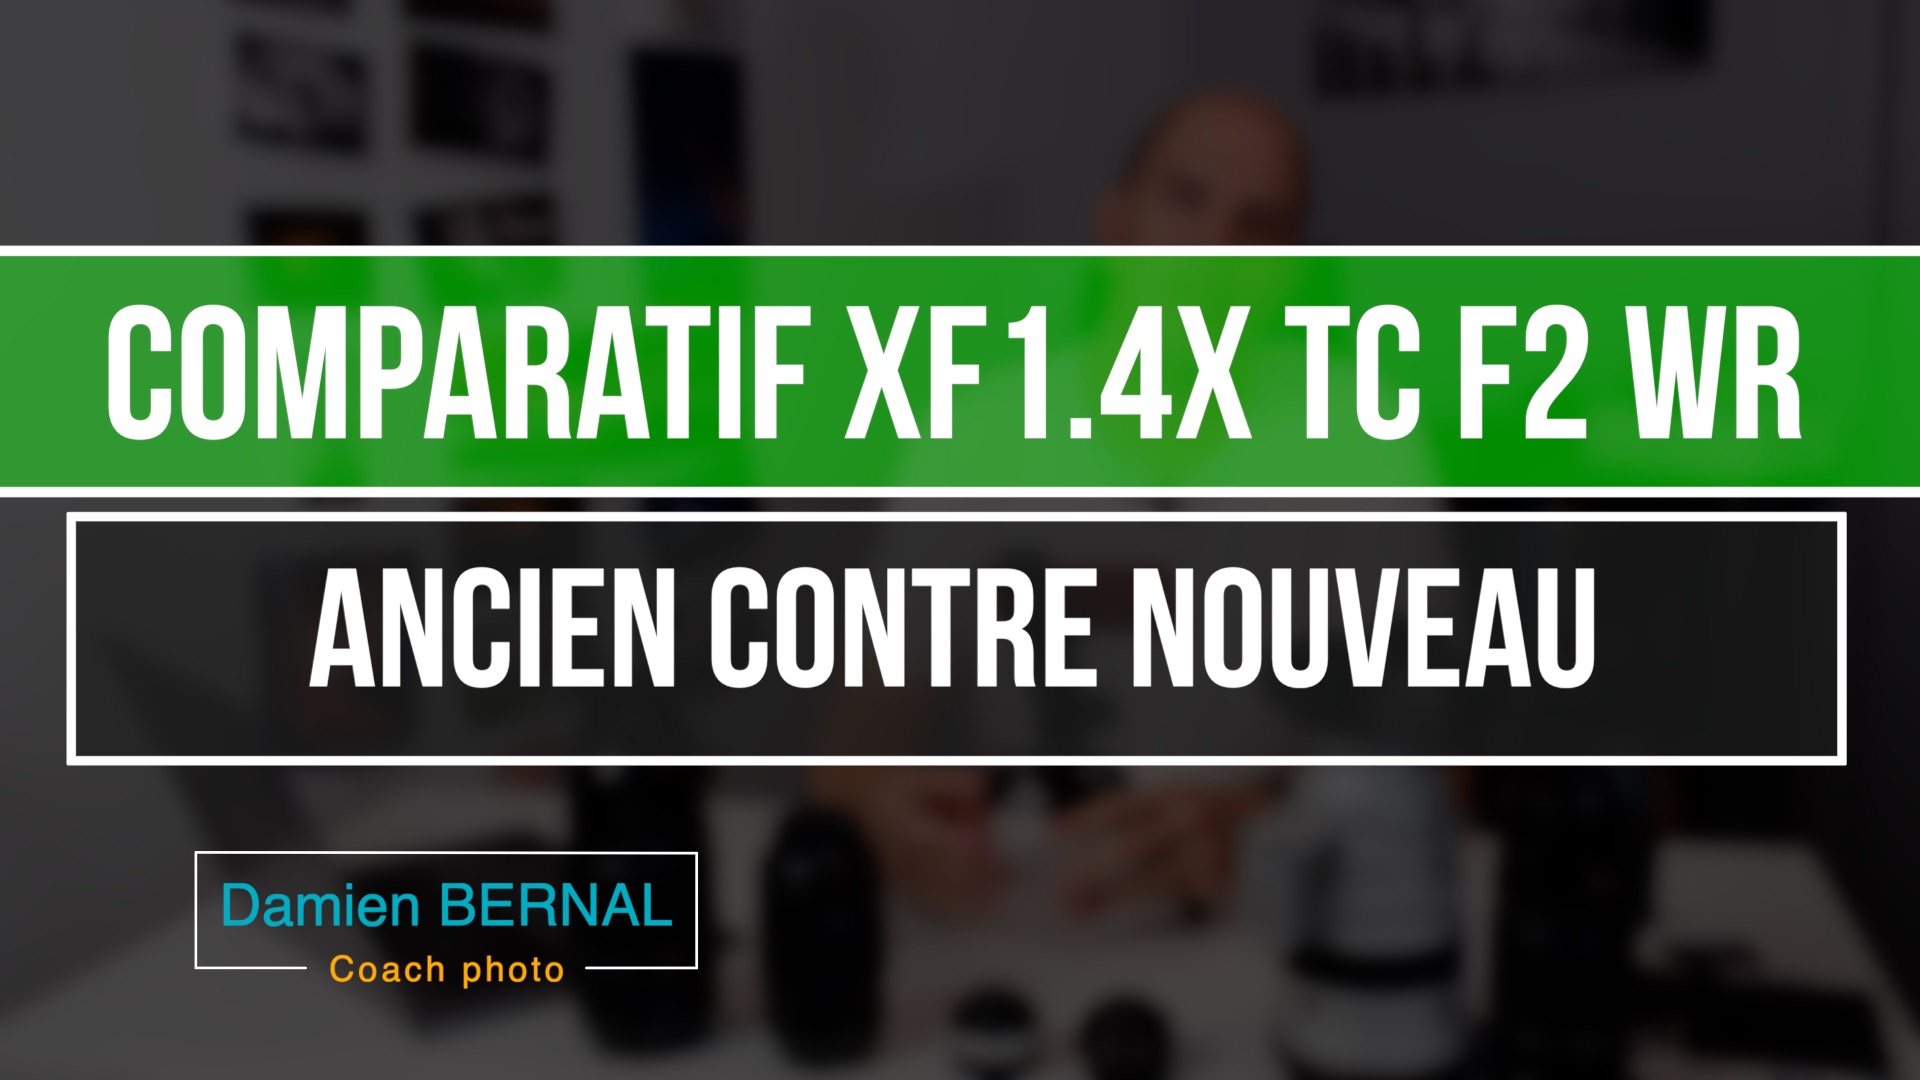 Comparatif XF 1.4x TC